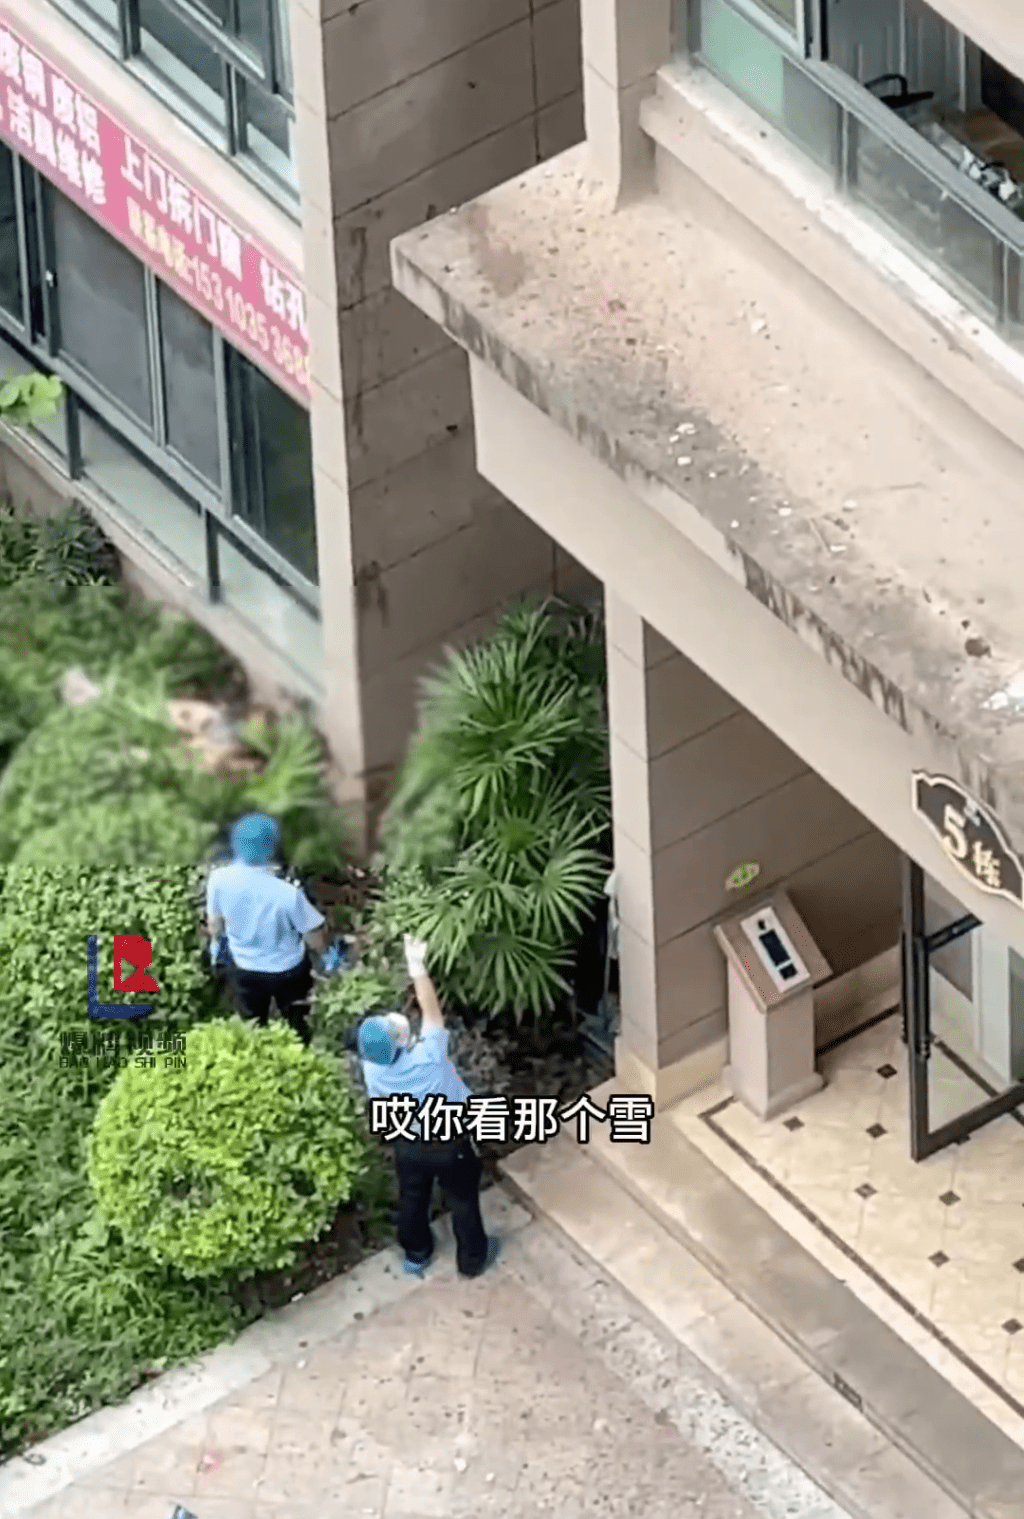 警方怀疑死者堕楼时，撞上墙梁致尸首分离。